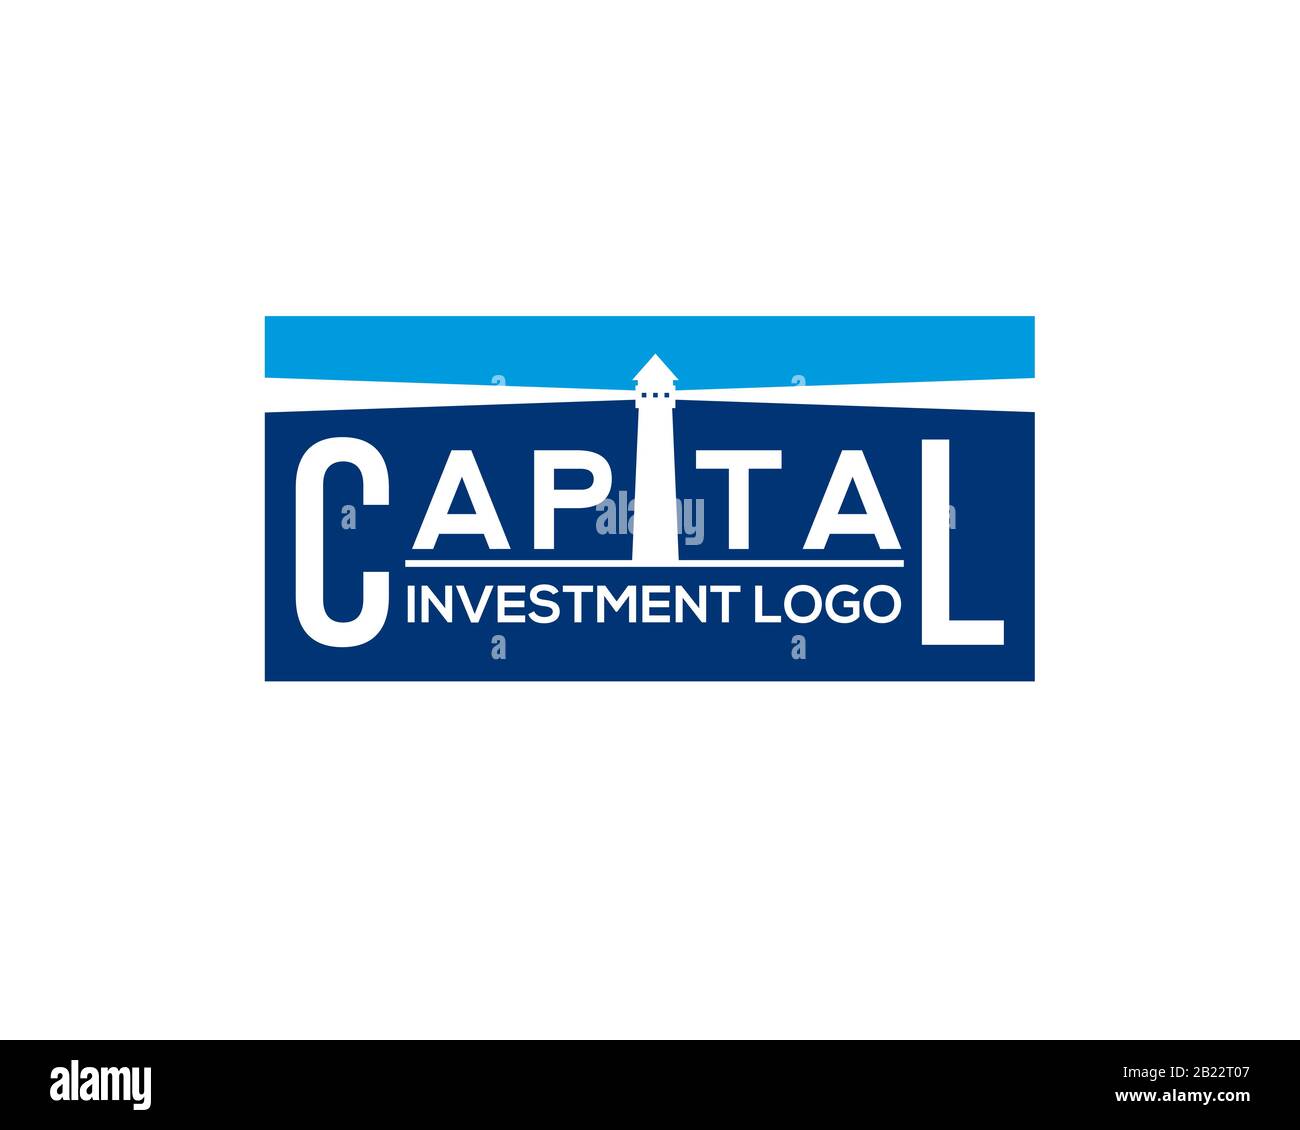 Kapitalfondsfinanzierung Investitionslogo mit Leuchtturmgebäude AS Negatives Leerzeichen Stock Vektor